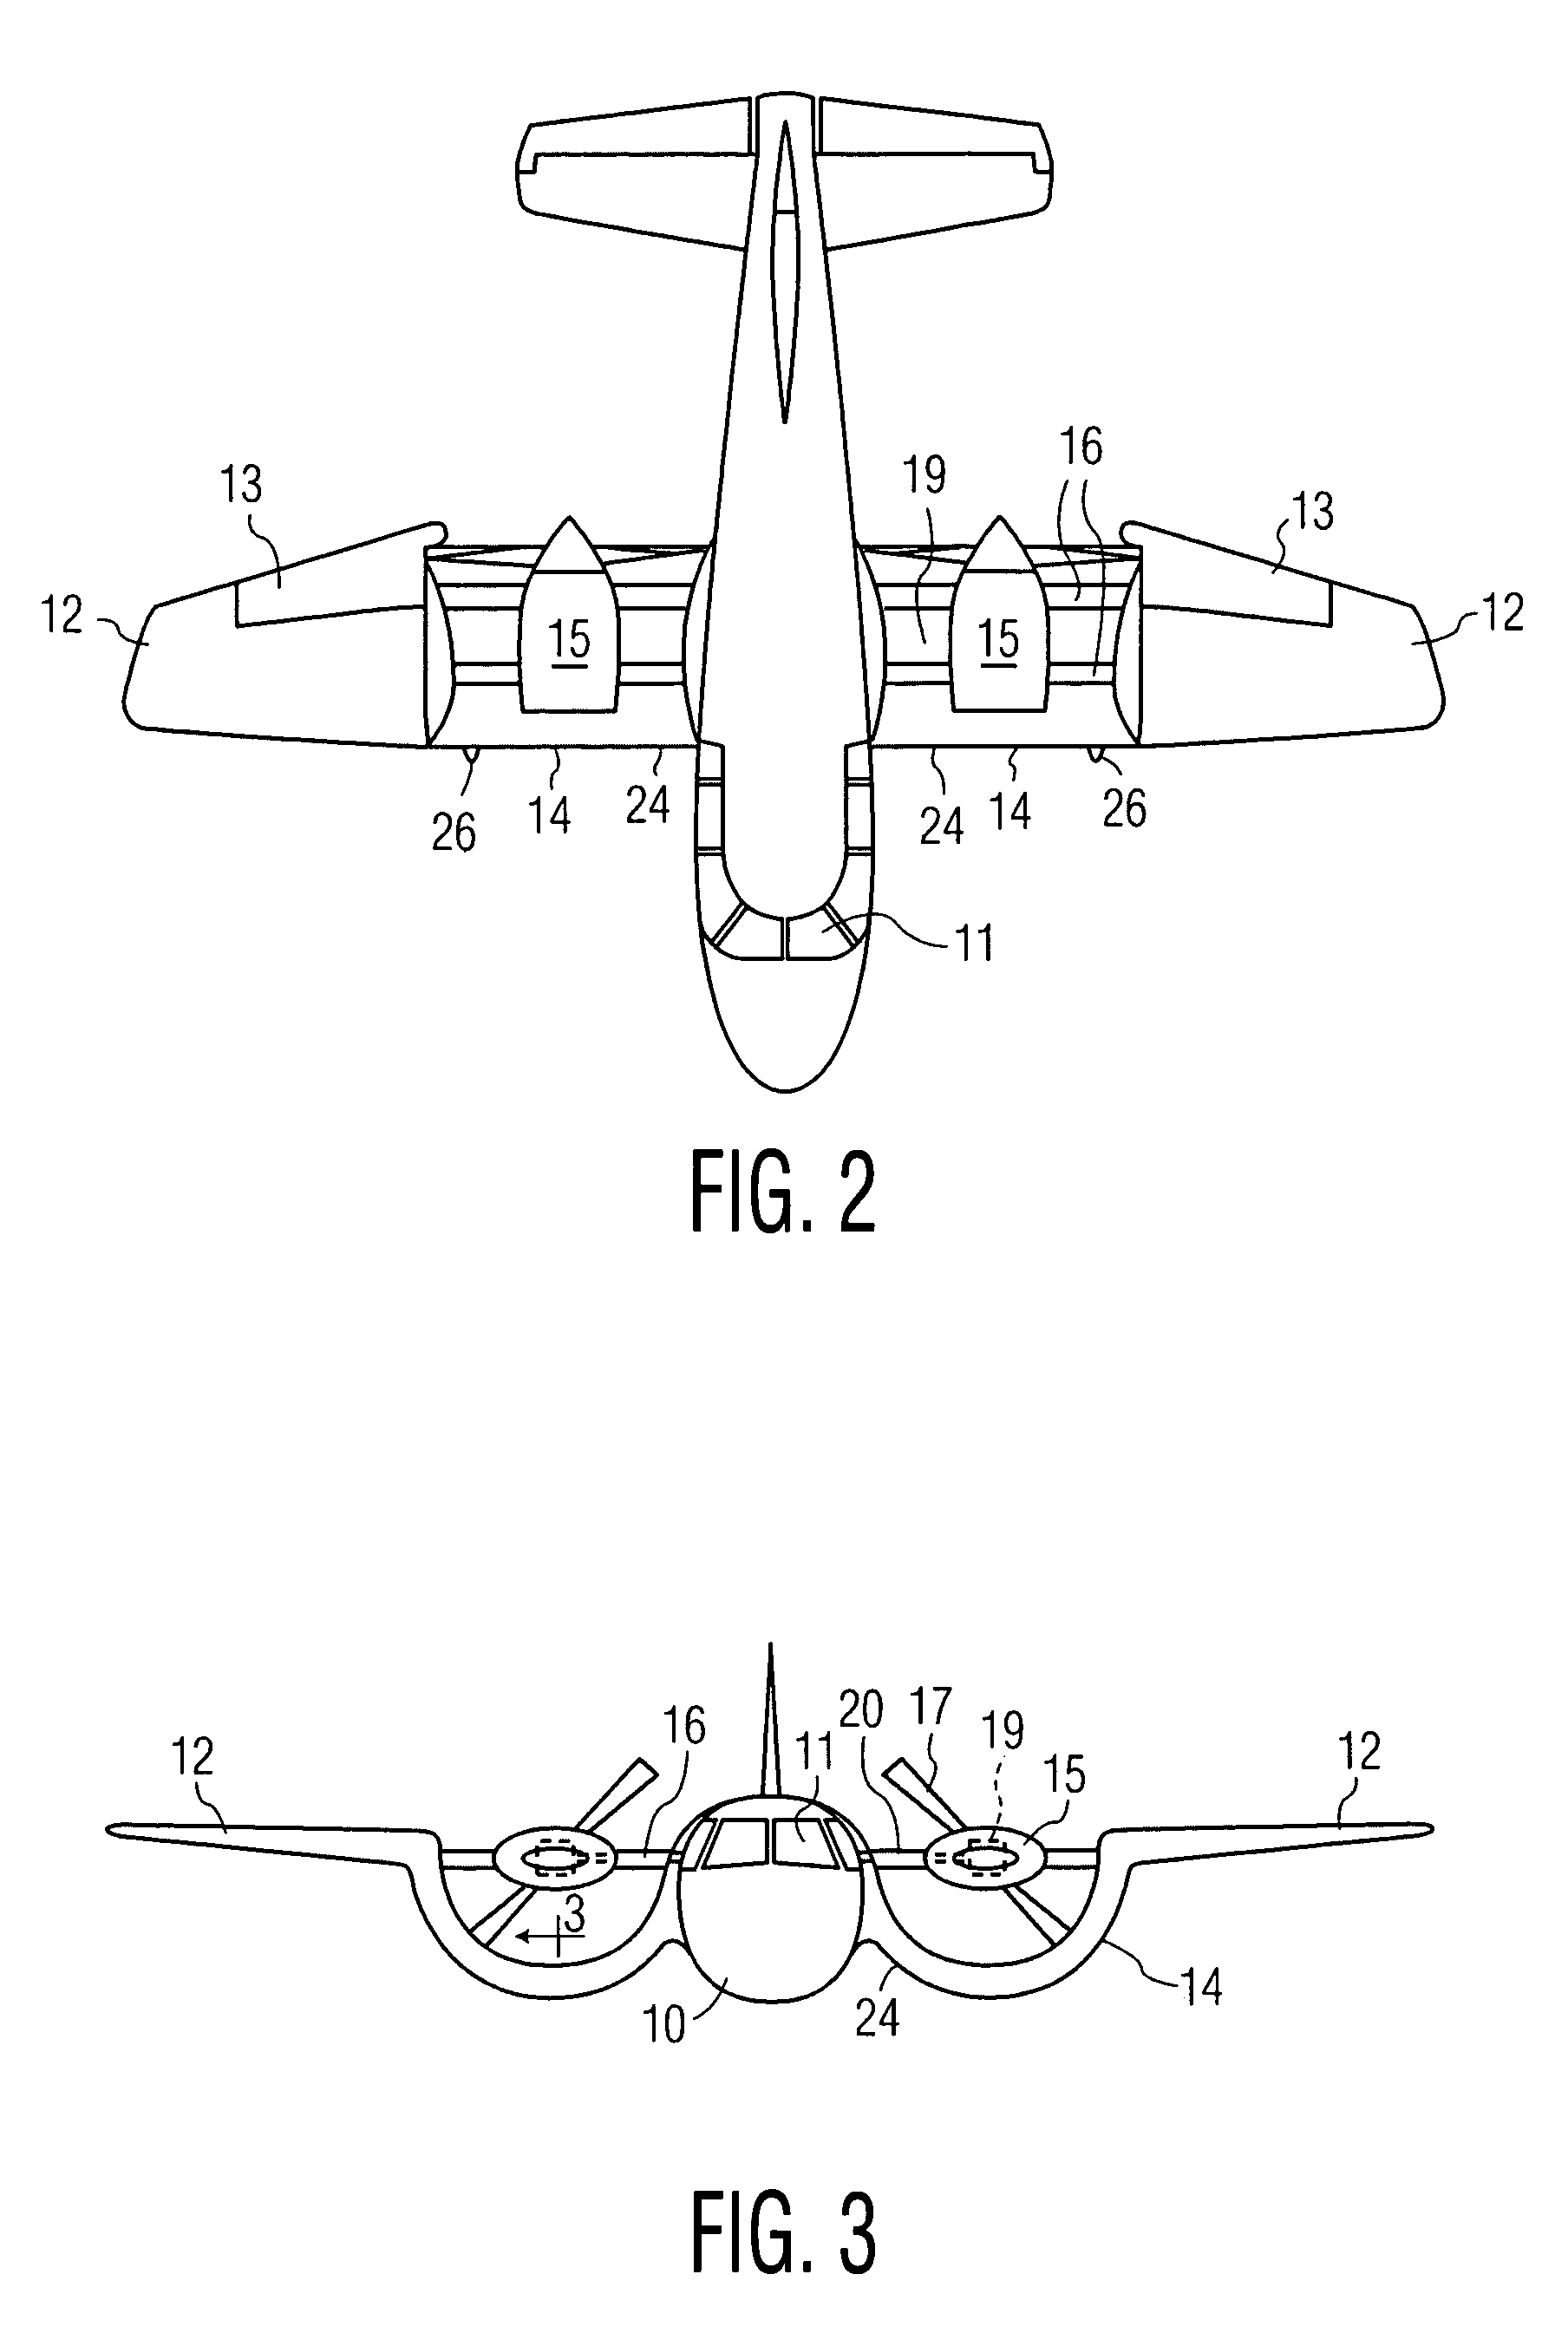 VTOL personal aircraft